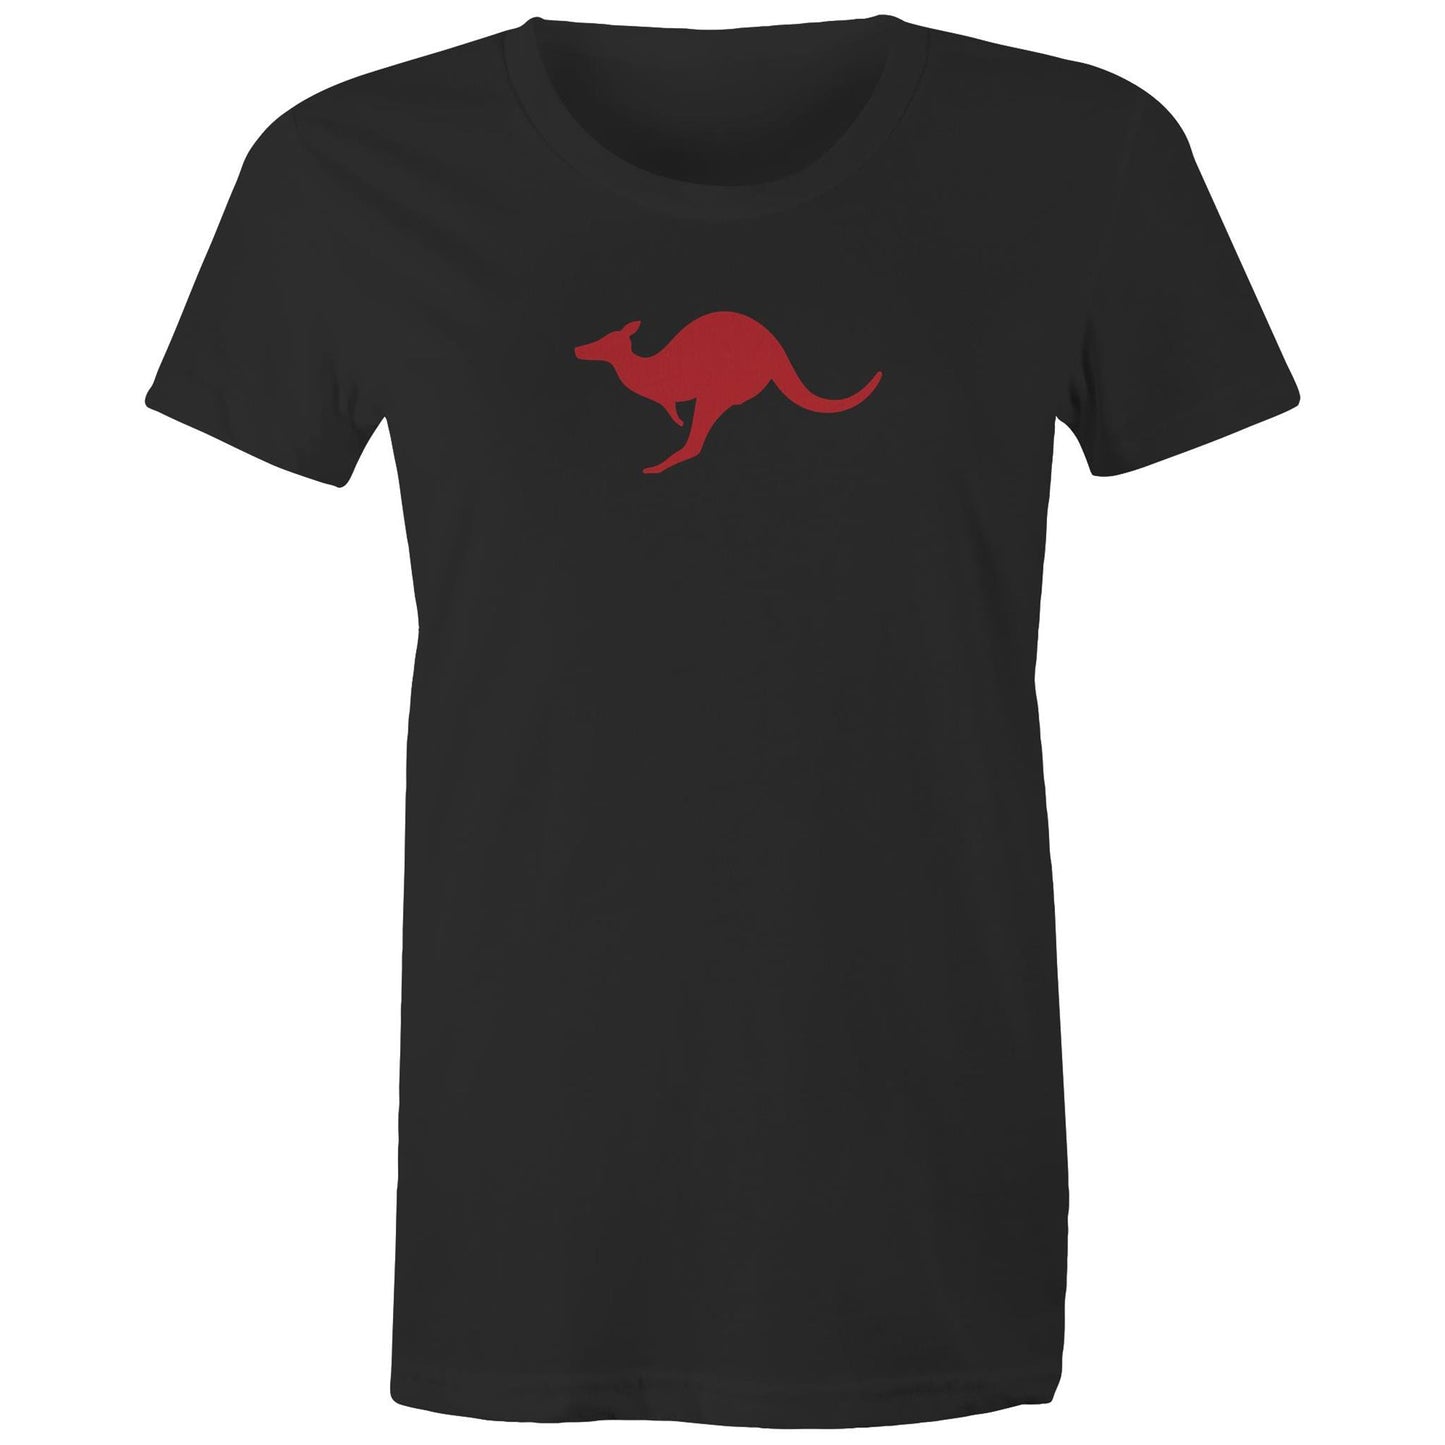 Kangaroo Too T Shirts for Women